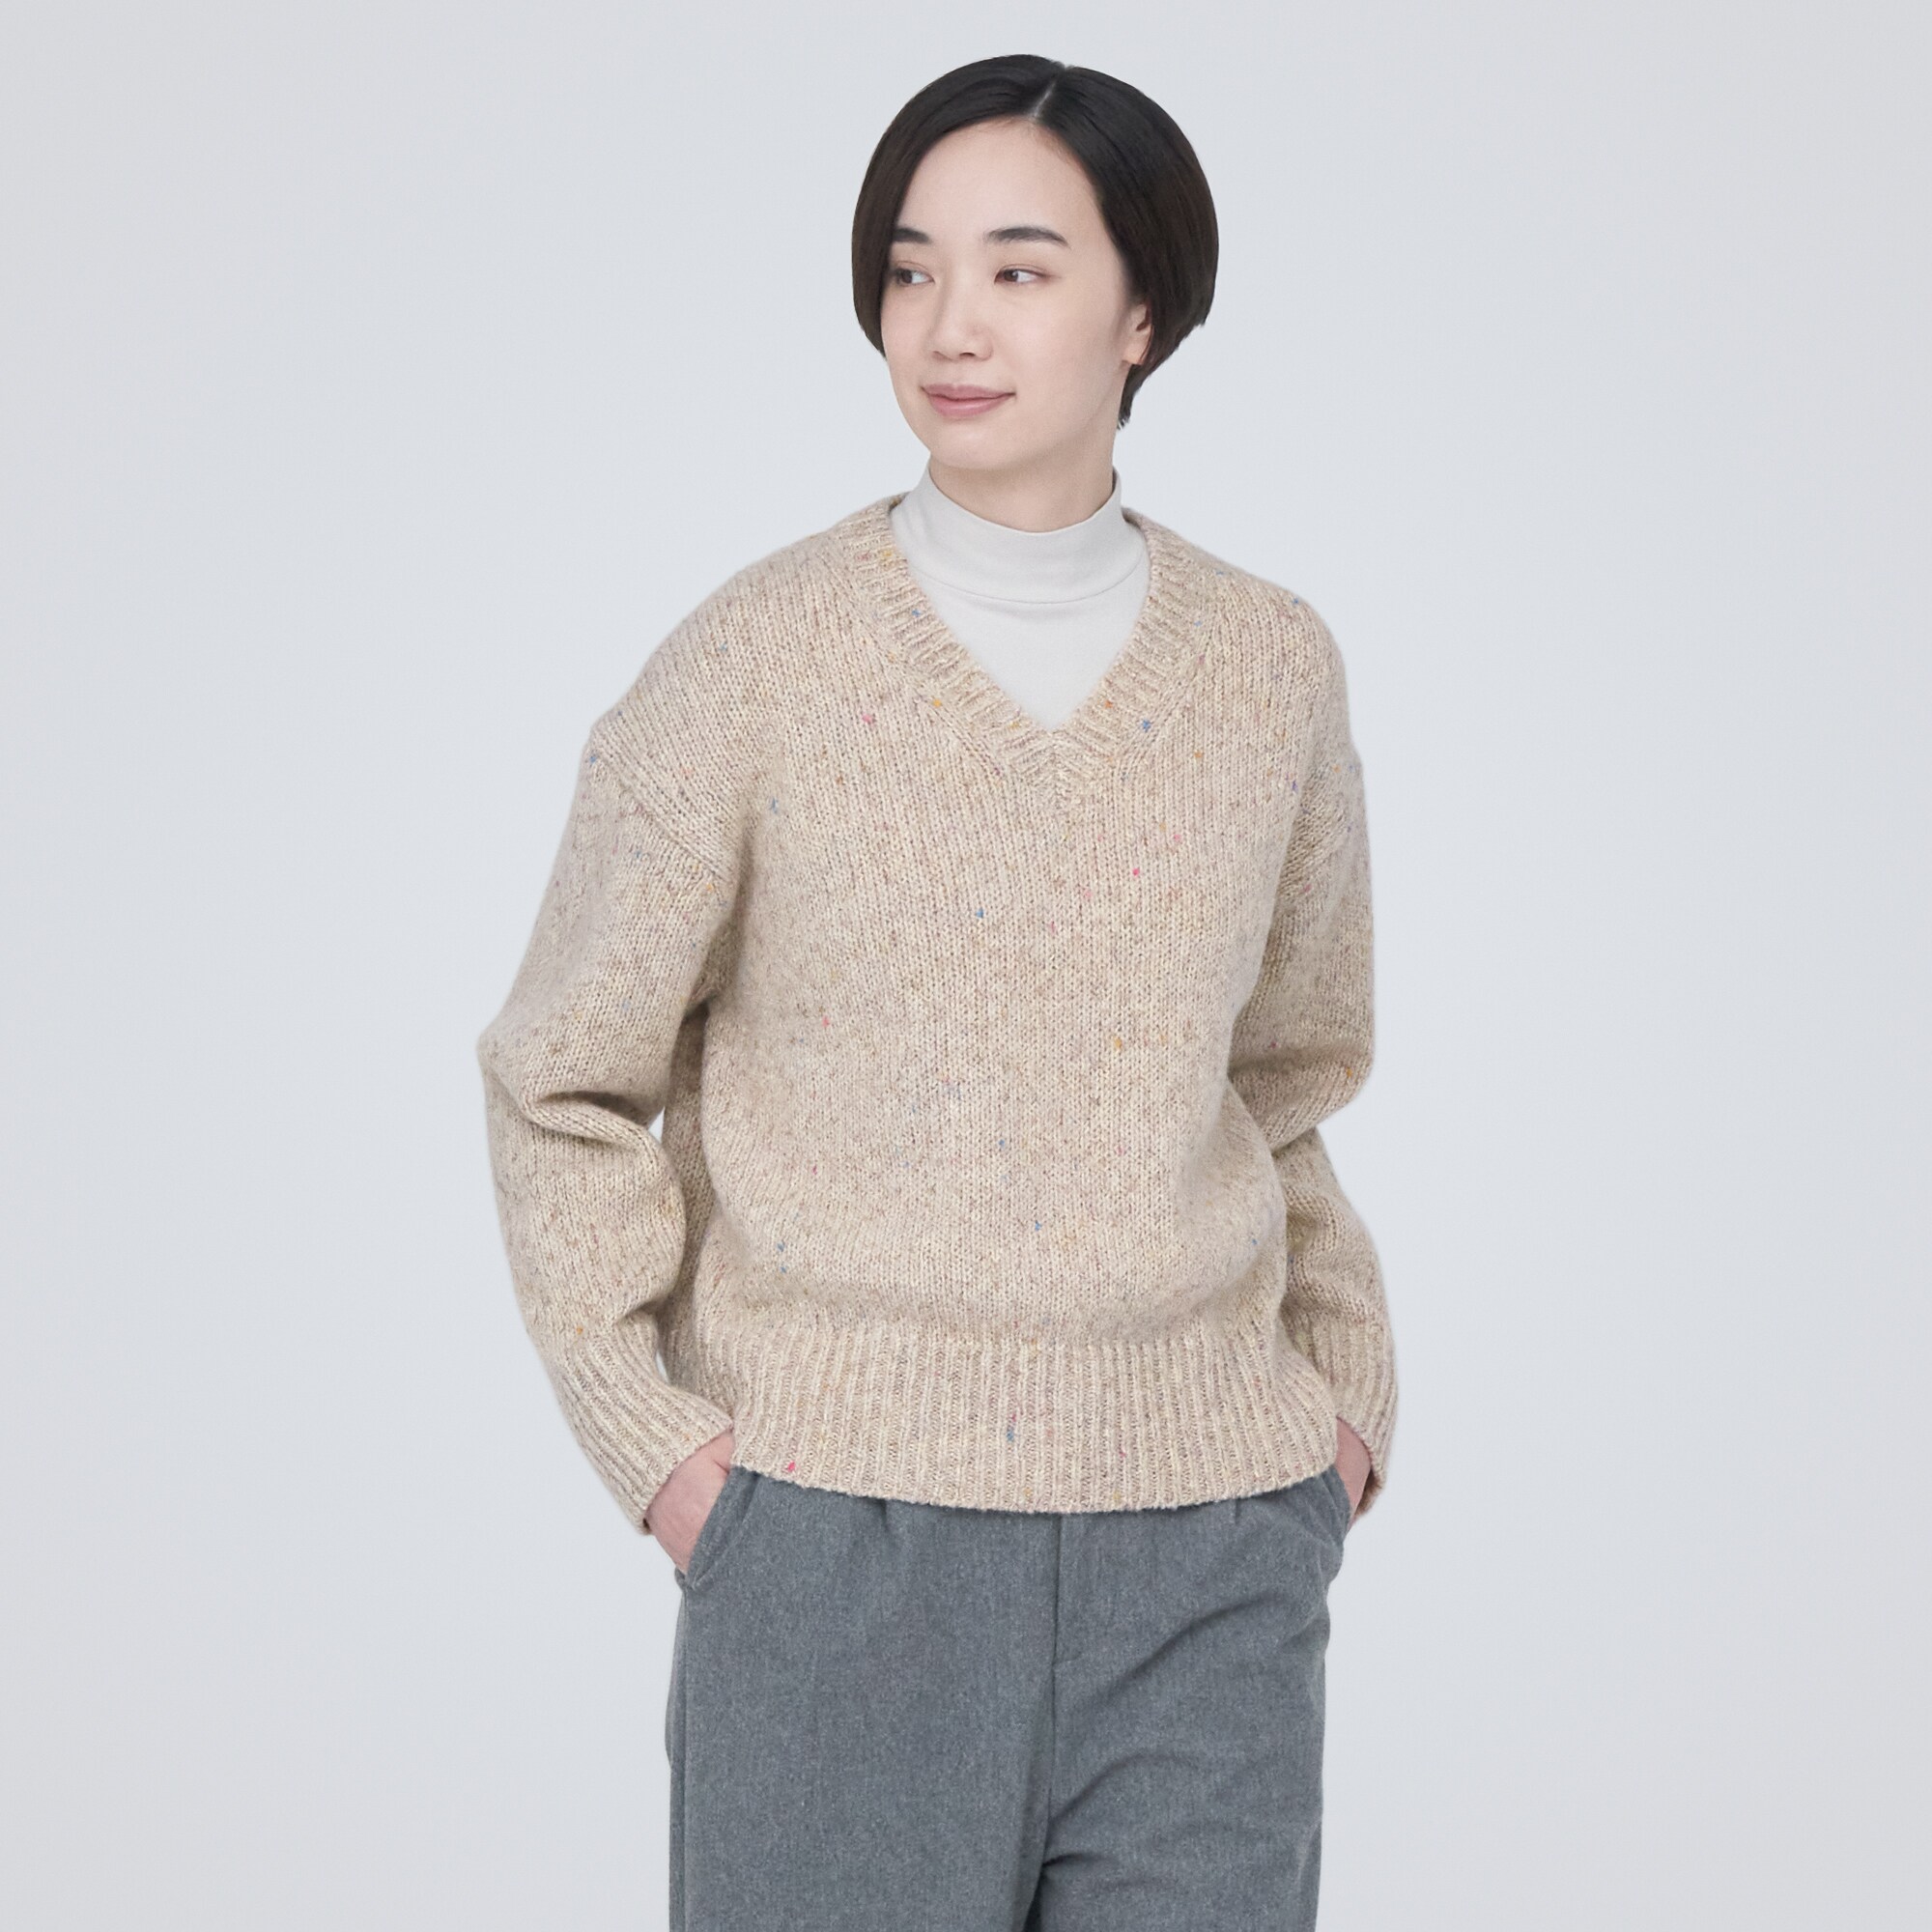 무인양품 일본 울 야크 혼방 브이넥 스웨터